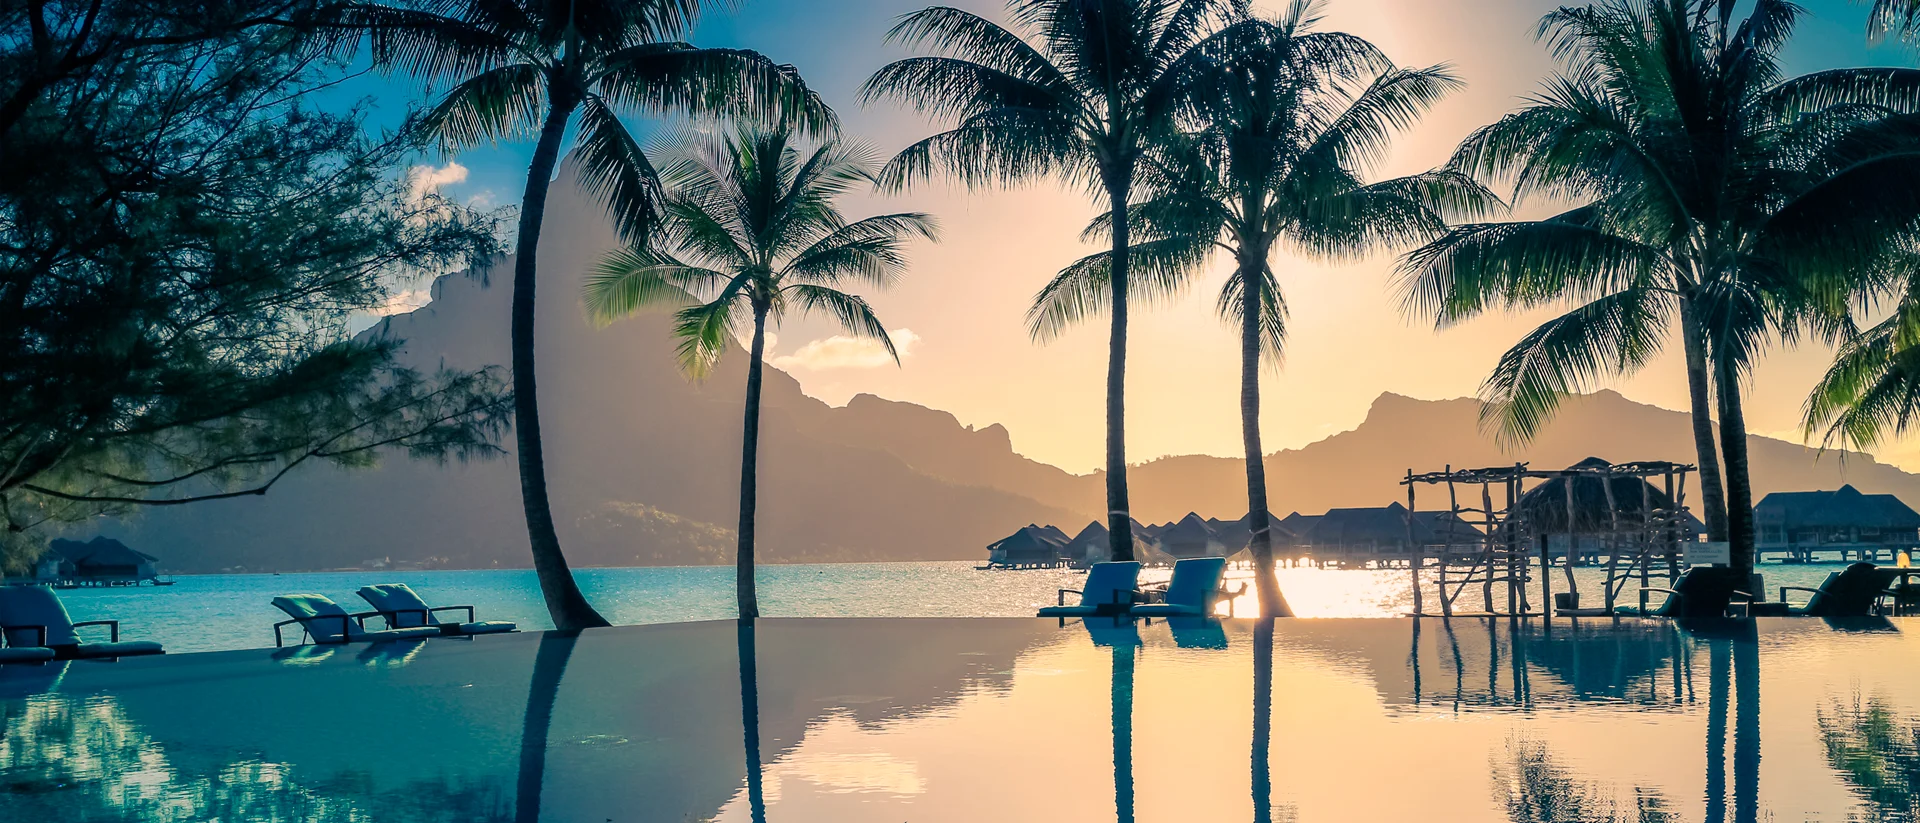 Tahiti beautiful sunset paradise landscape beach palms